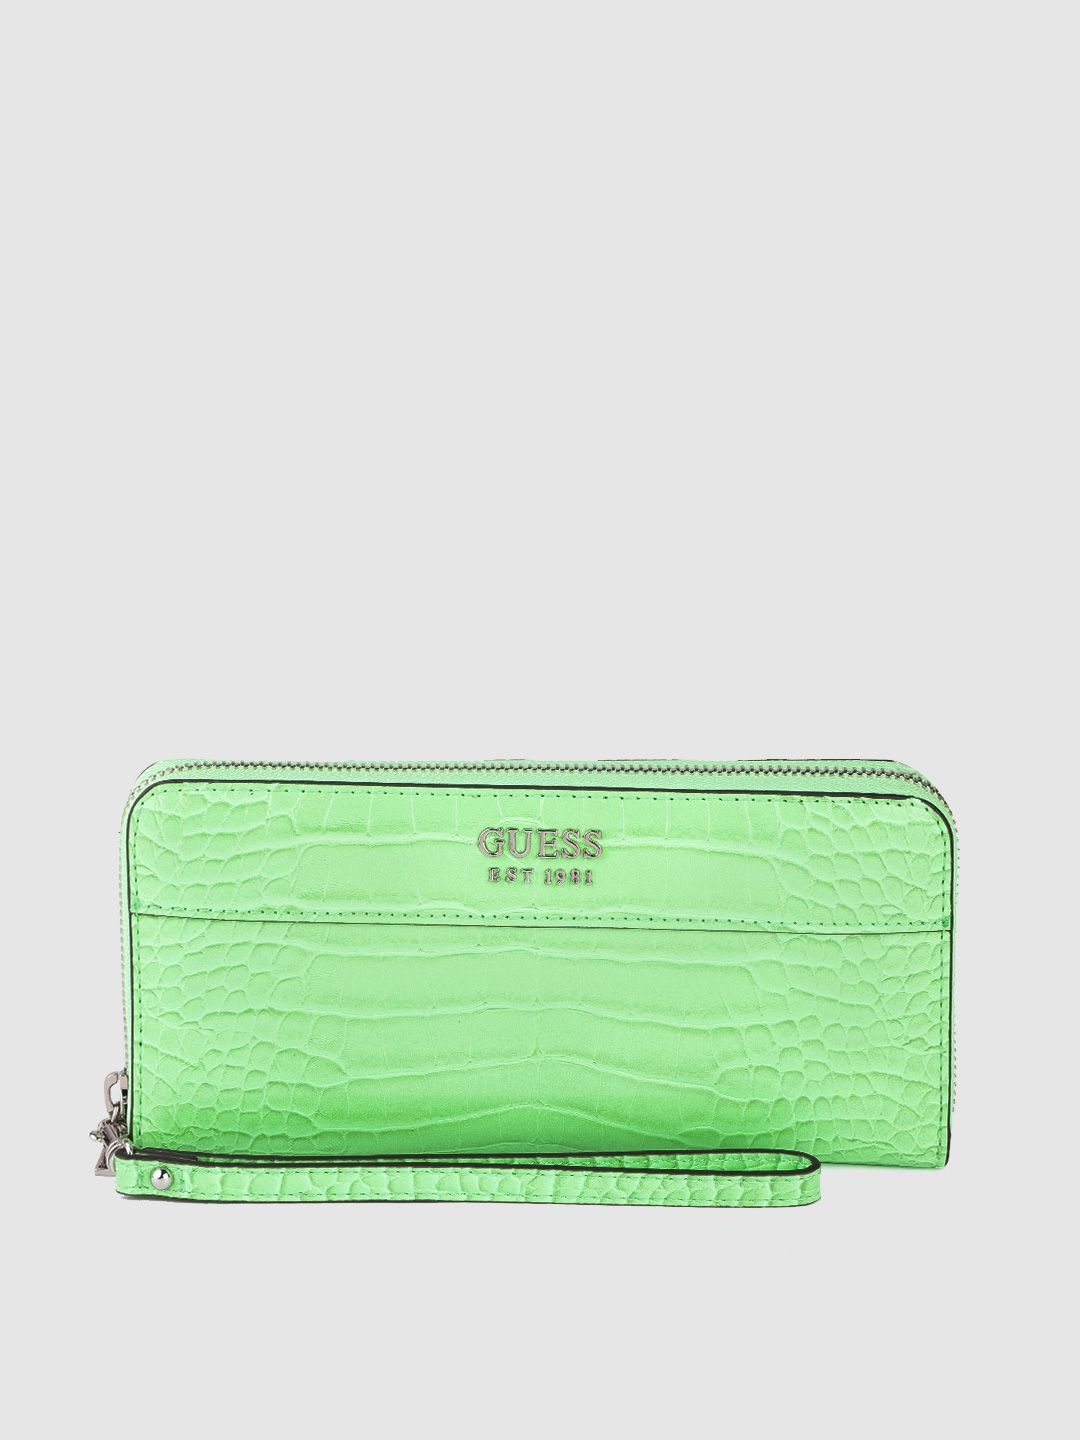 GUESS Women Green Croc-Textured Zip Around Wallet Price in India